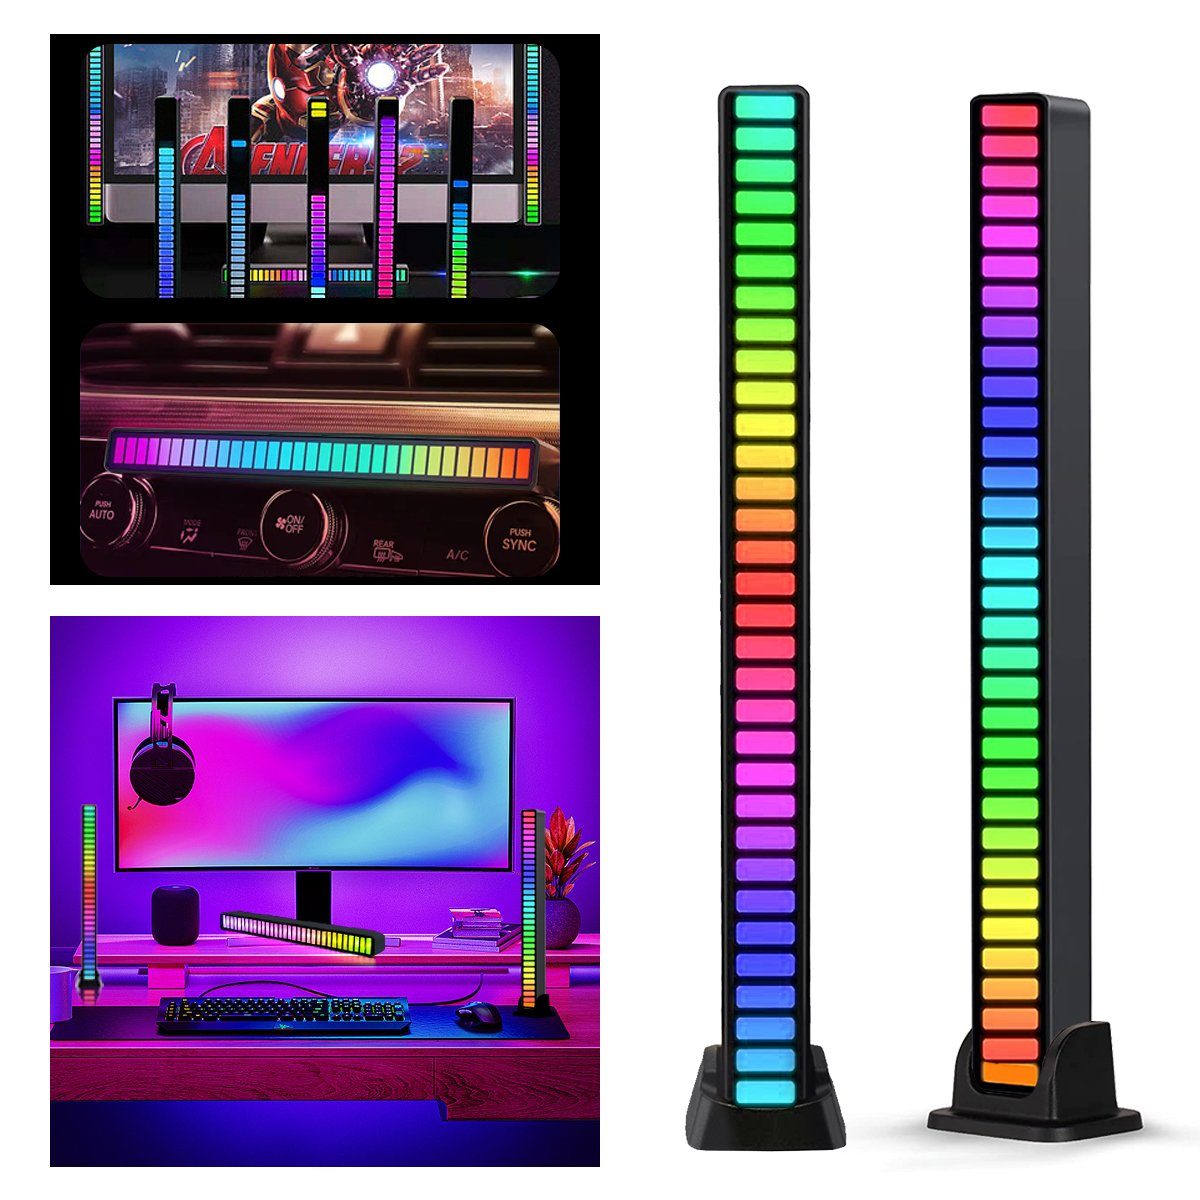 Level 32 Anzeige LED Bit 7Magic Smarte RGB Musik Licht Lampe LED-Leuchte,